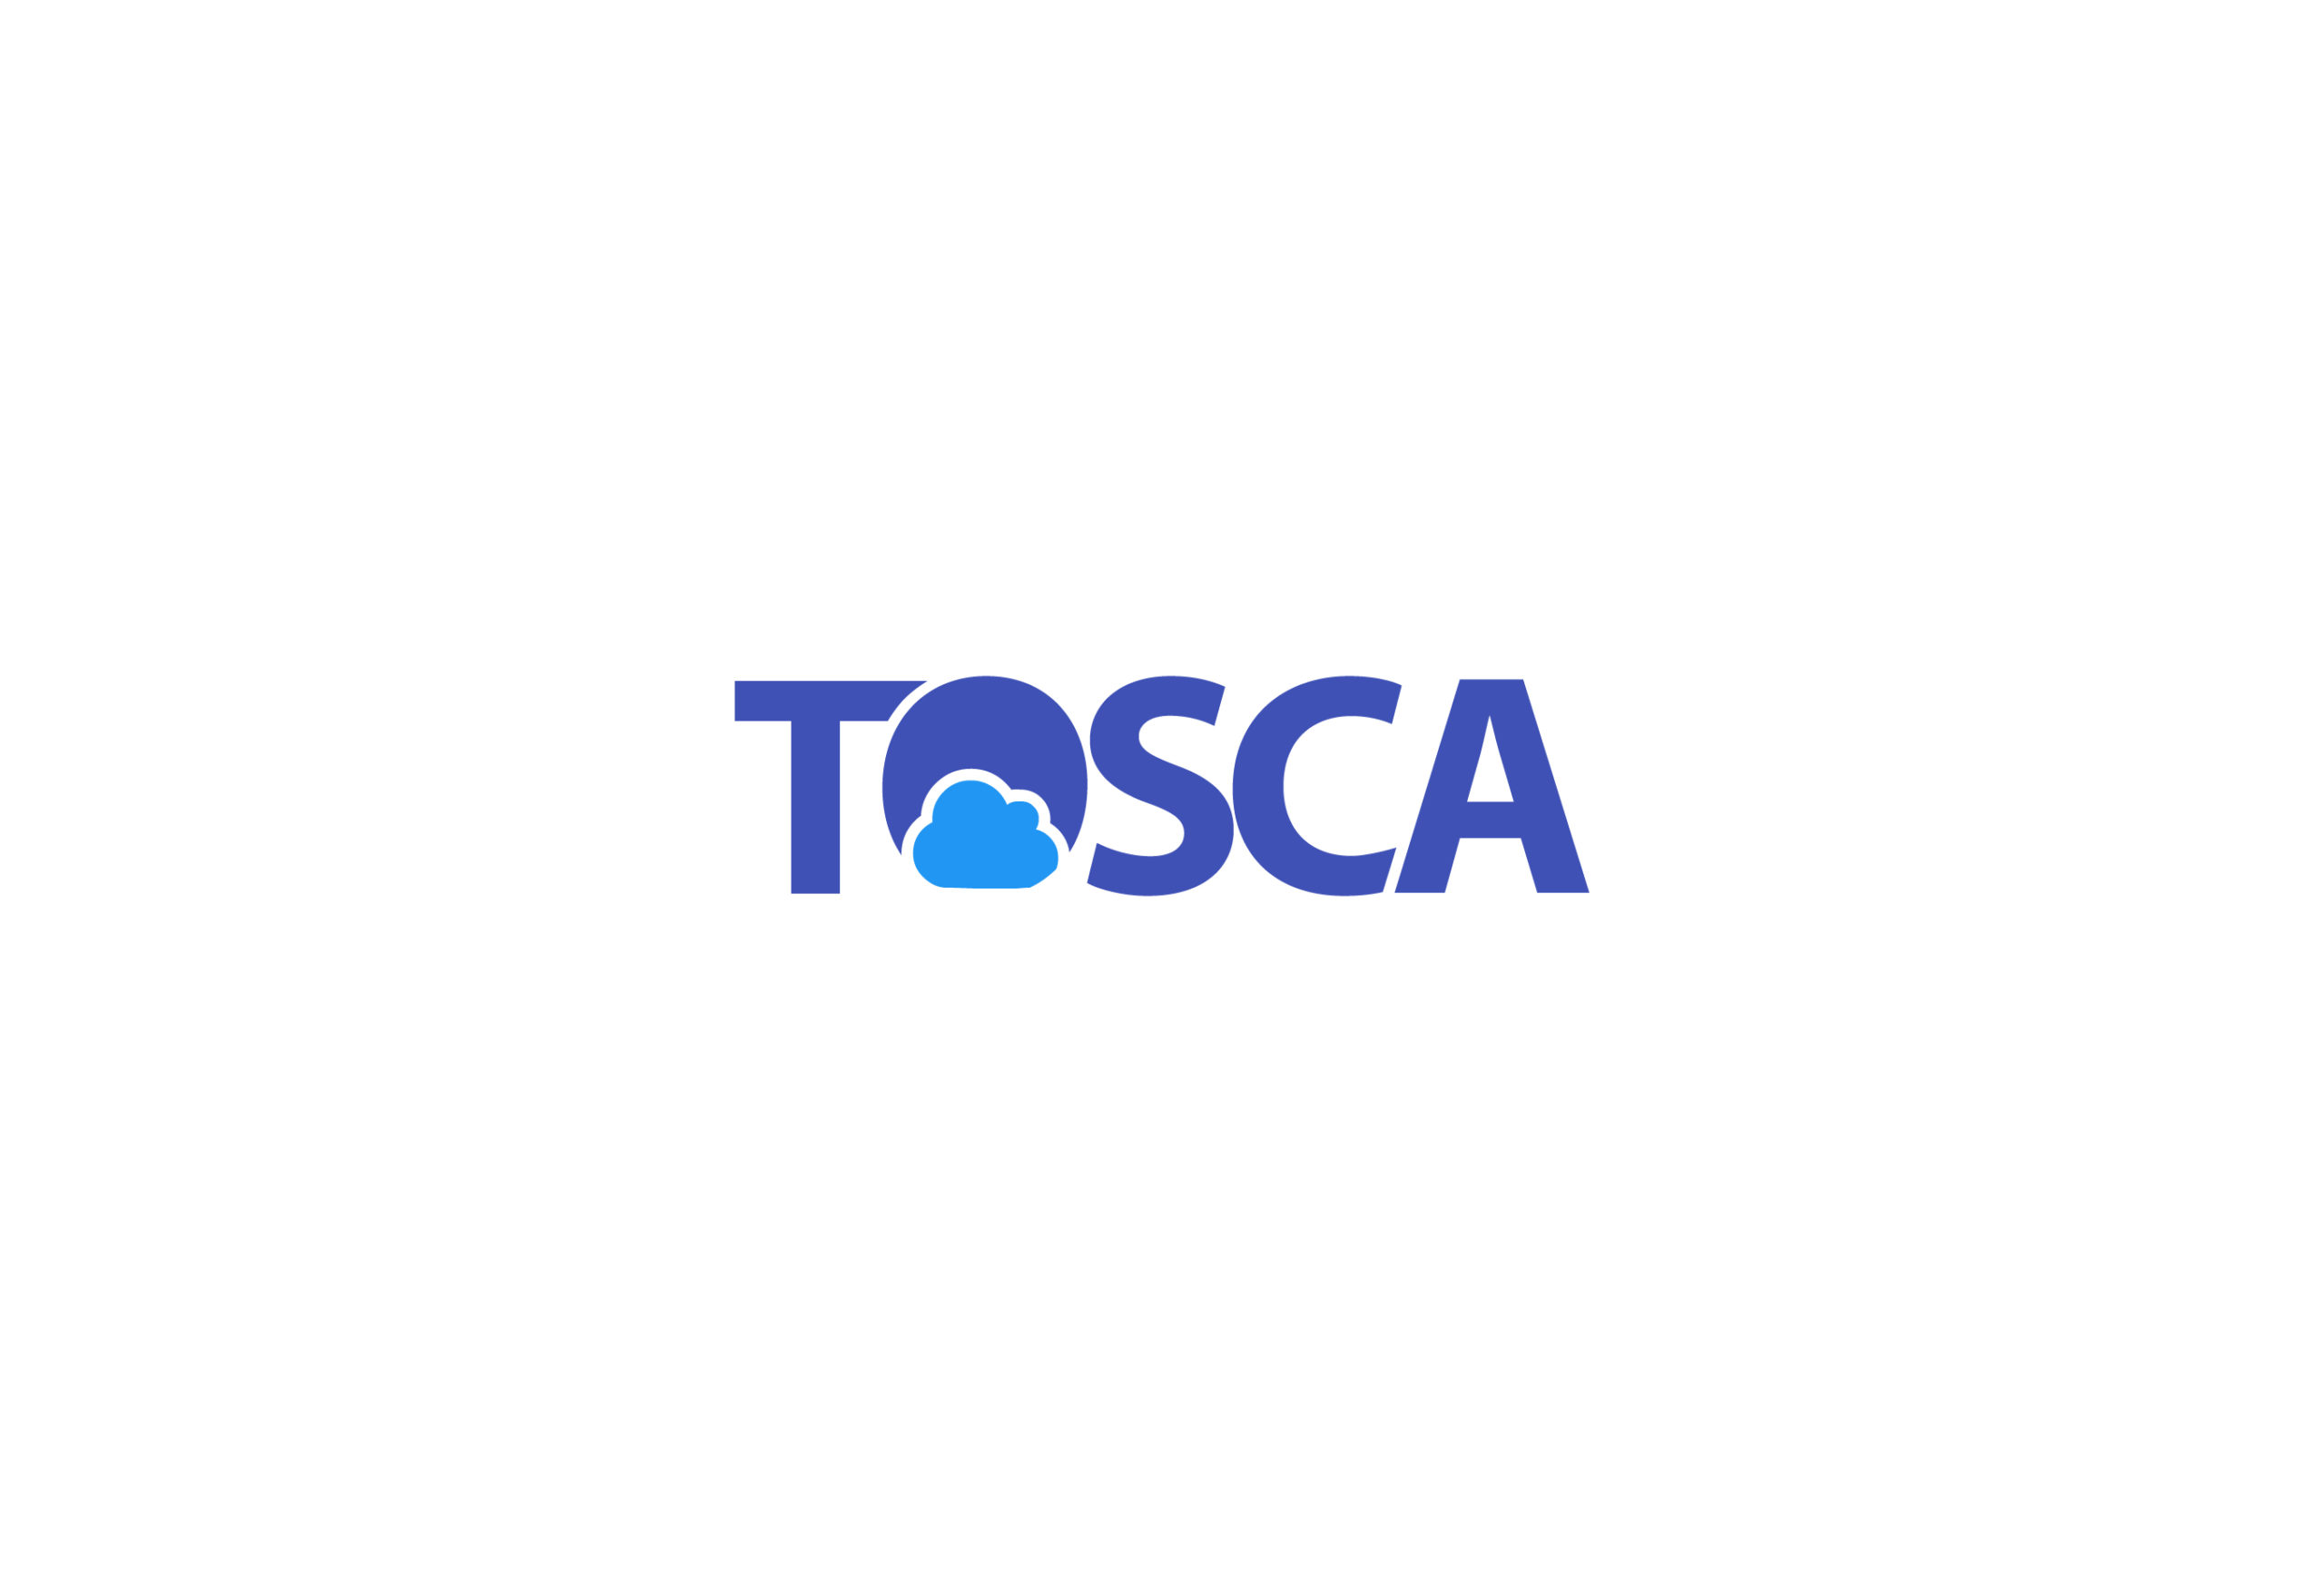 TOSCA logo